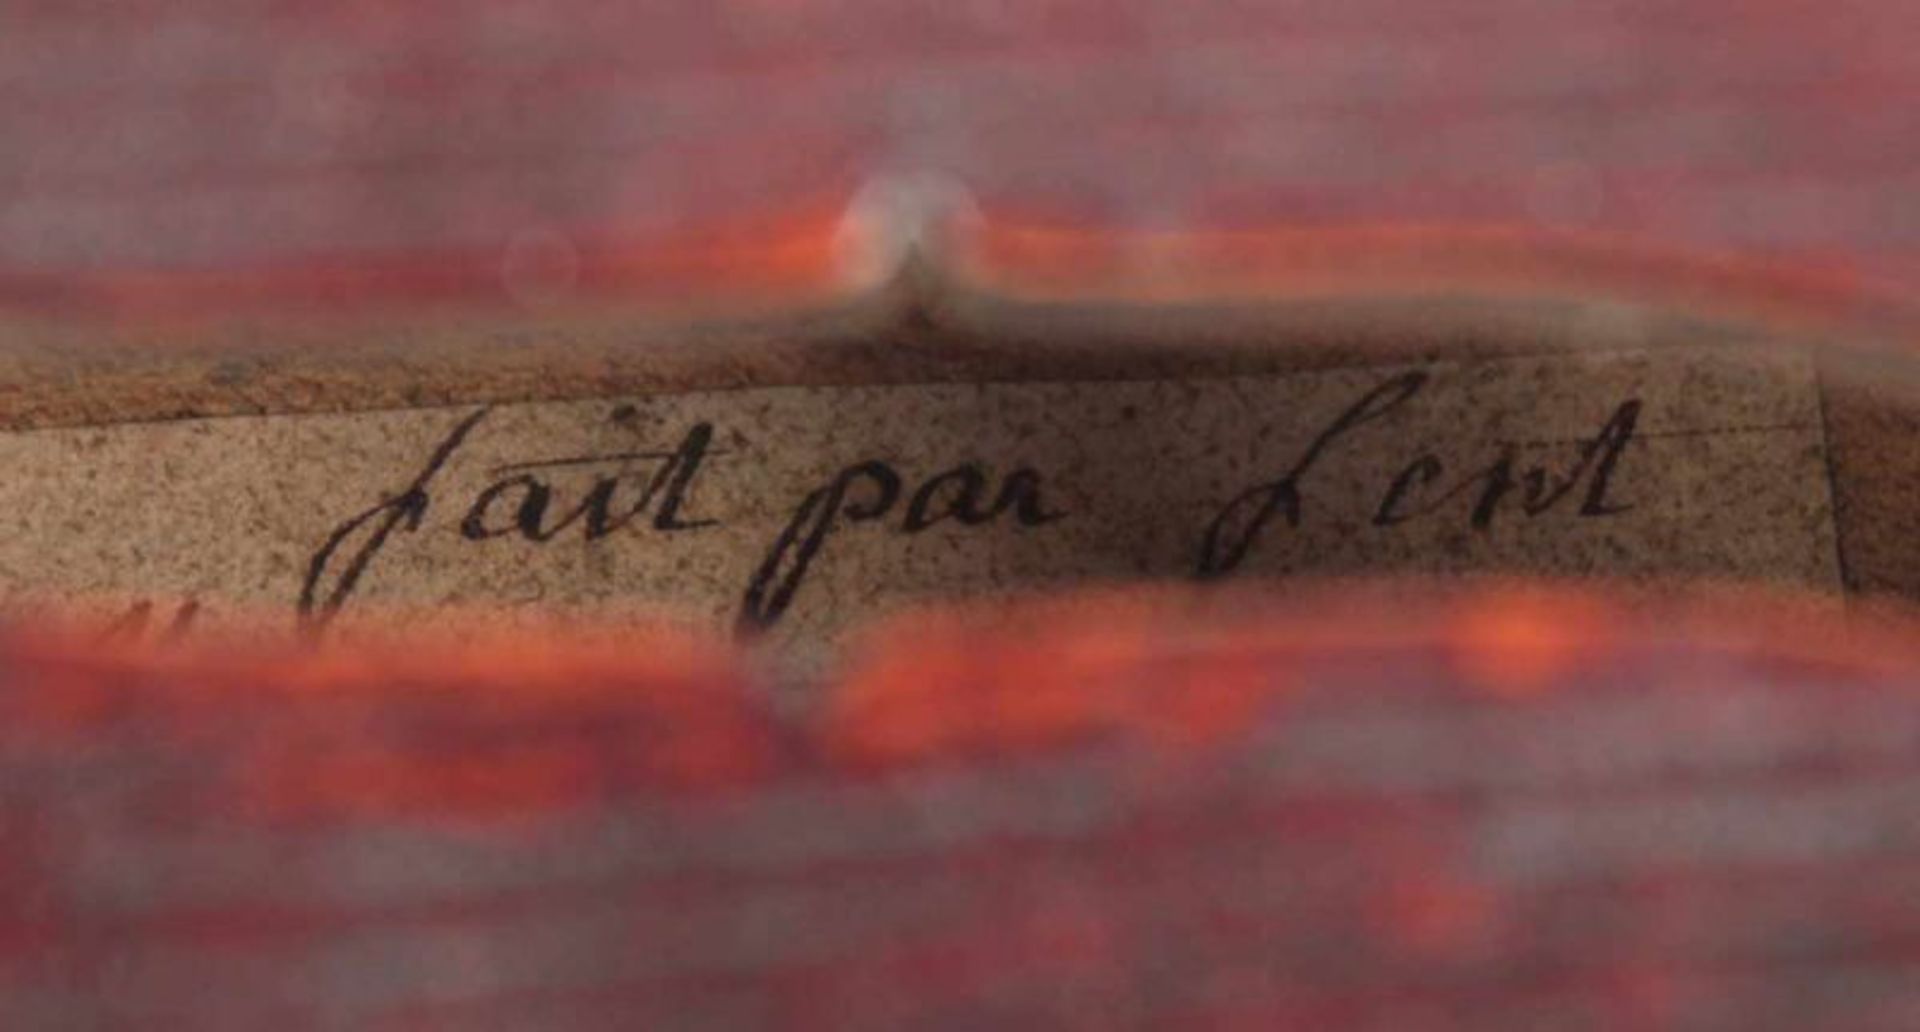 BRATSCHE, mit Bogen, in Kasten, rest.bed., L 65, innen bez. "Fent", wohl Francois FENT, PARIS, - Bild 6 aus 9